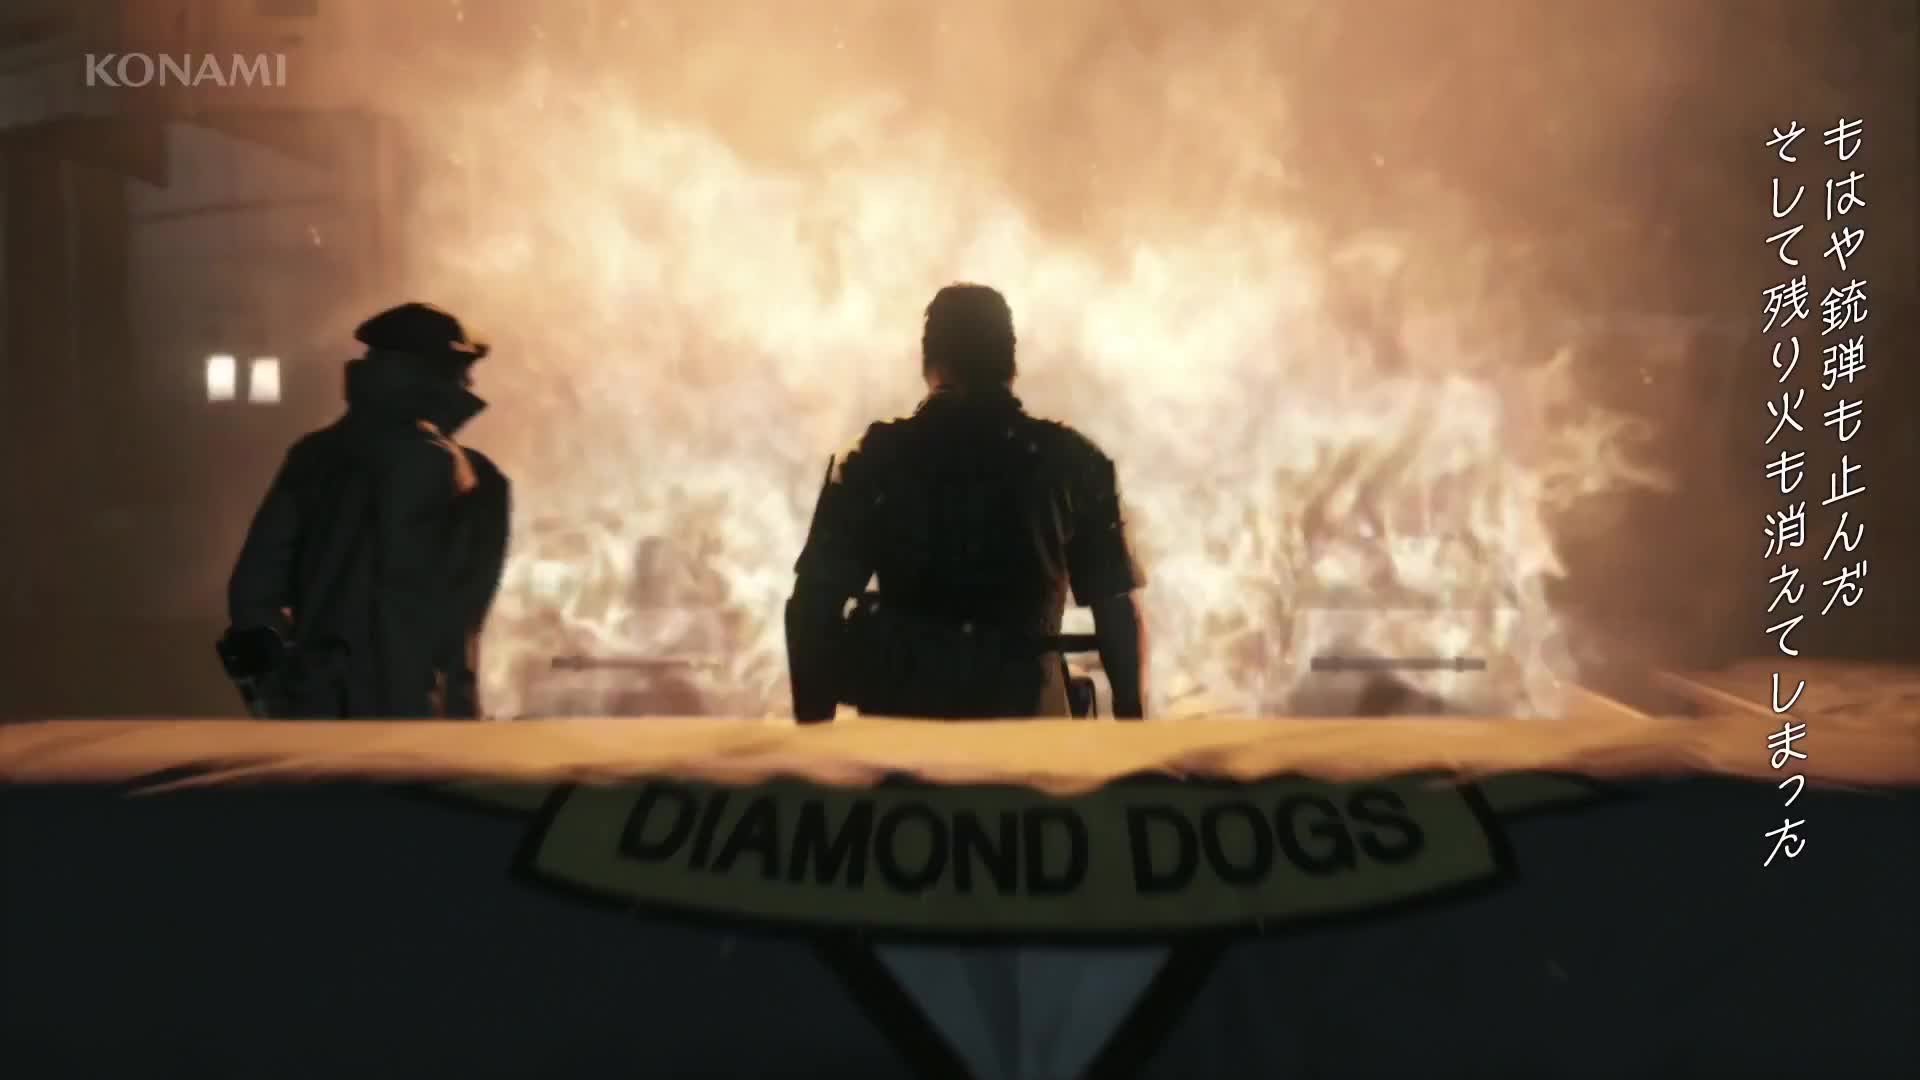 Metal Gear Solid V: The Phantom Pain E3 2014 Trailer